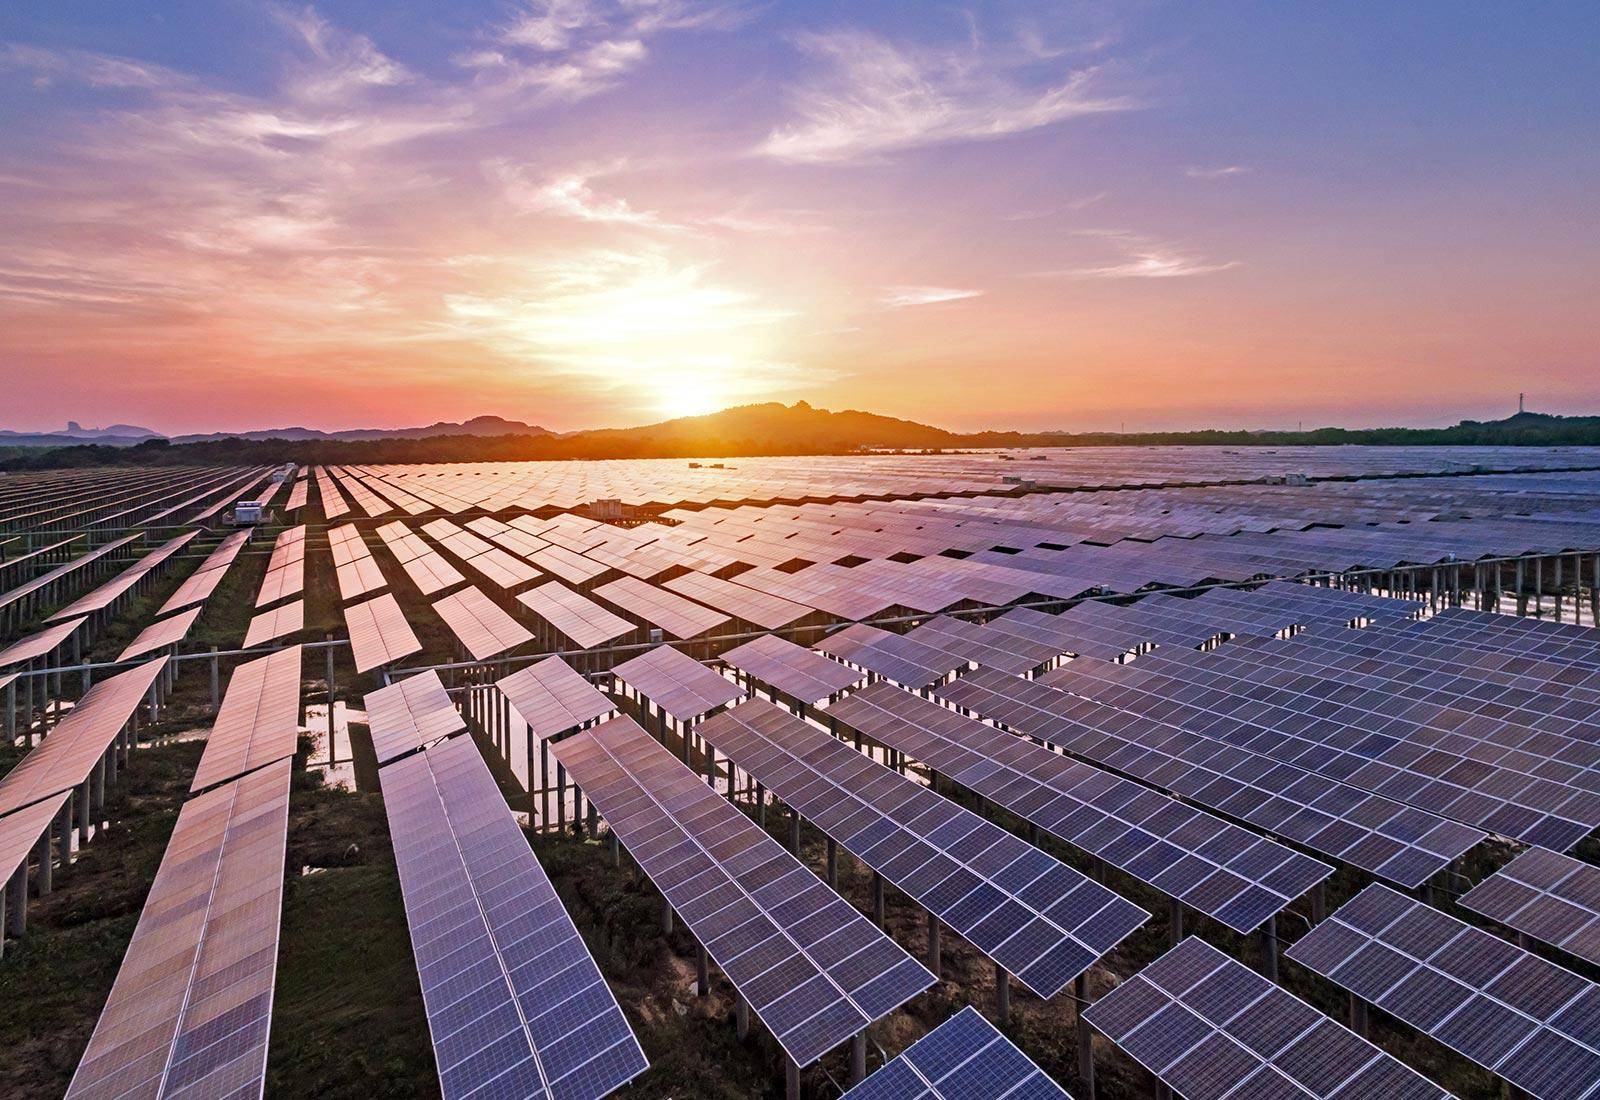 Солнечная энергия и солнечные электростанции | с 1996г. разработка, установка, интеграция